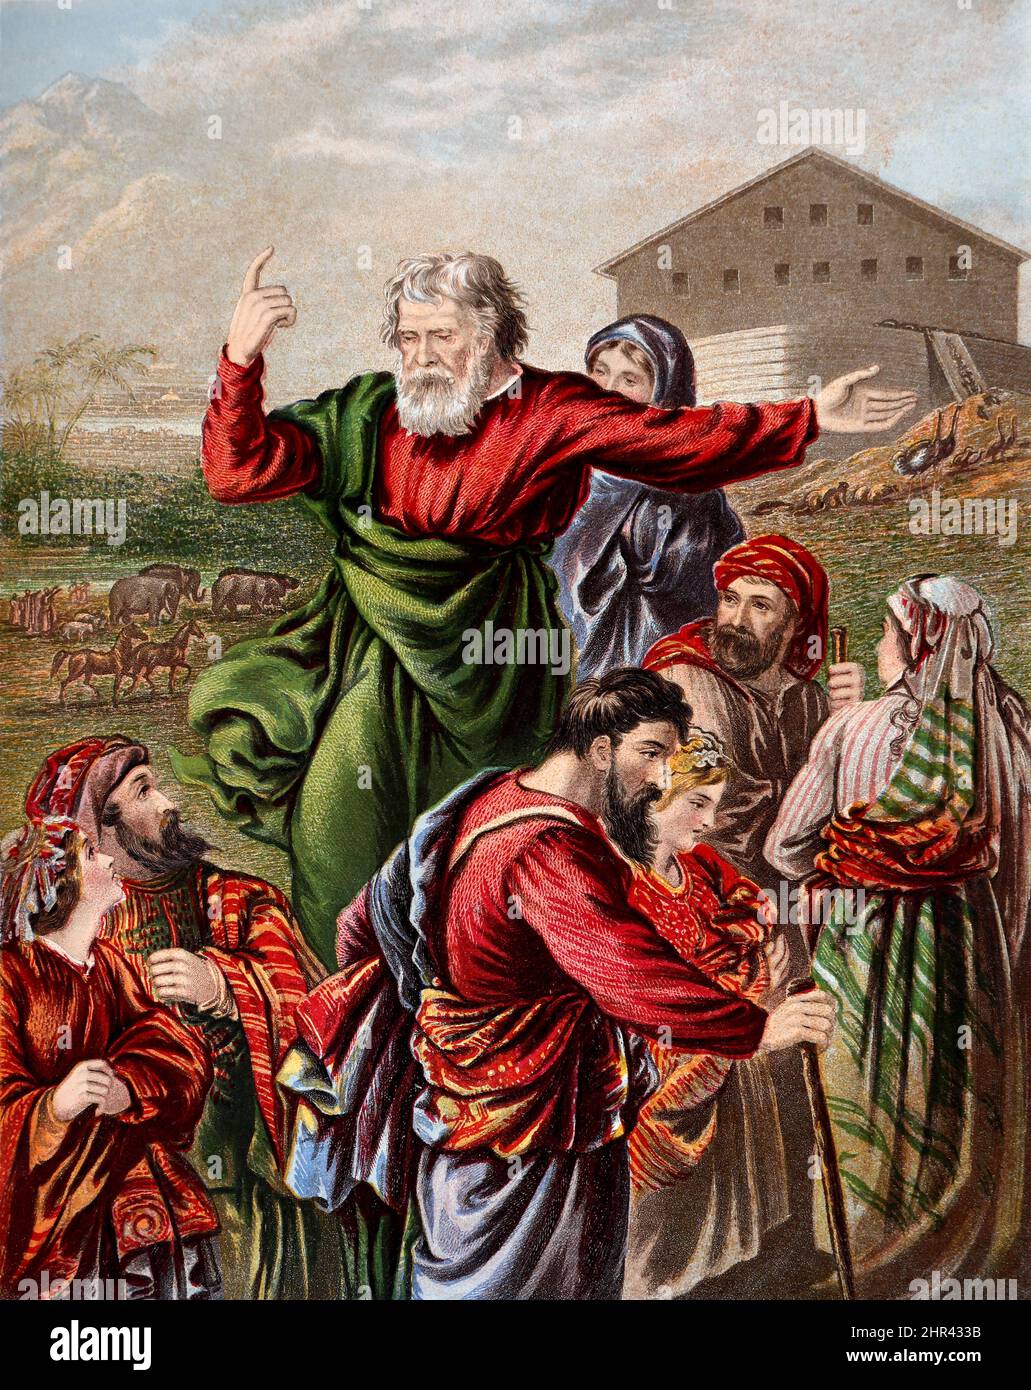 Bibelgeschichte – Illustration von Noah und seiner Familie, die sich auf den Eintritt in die Arche aus dem Alten Testament in Genesis vorbereiten Stockfoto